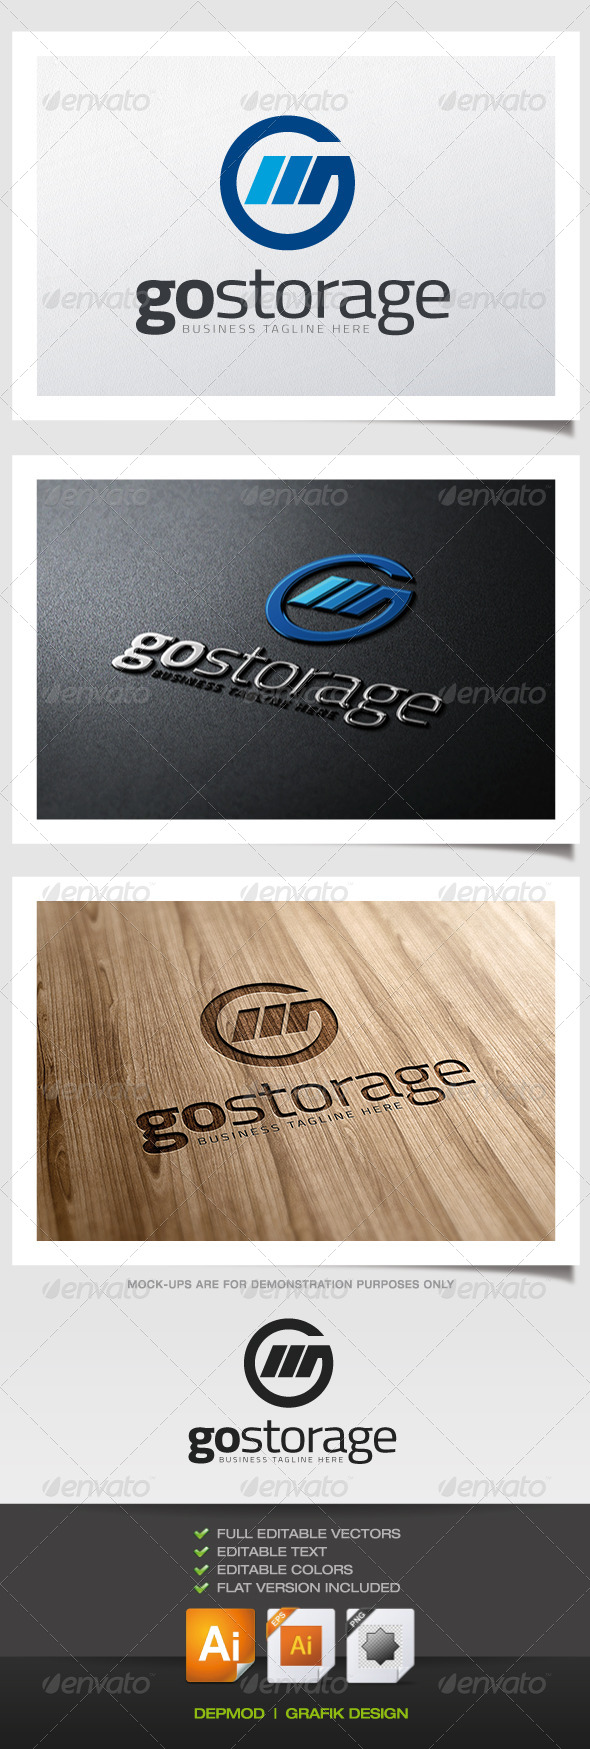 Go Storage Logo